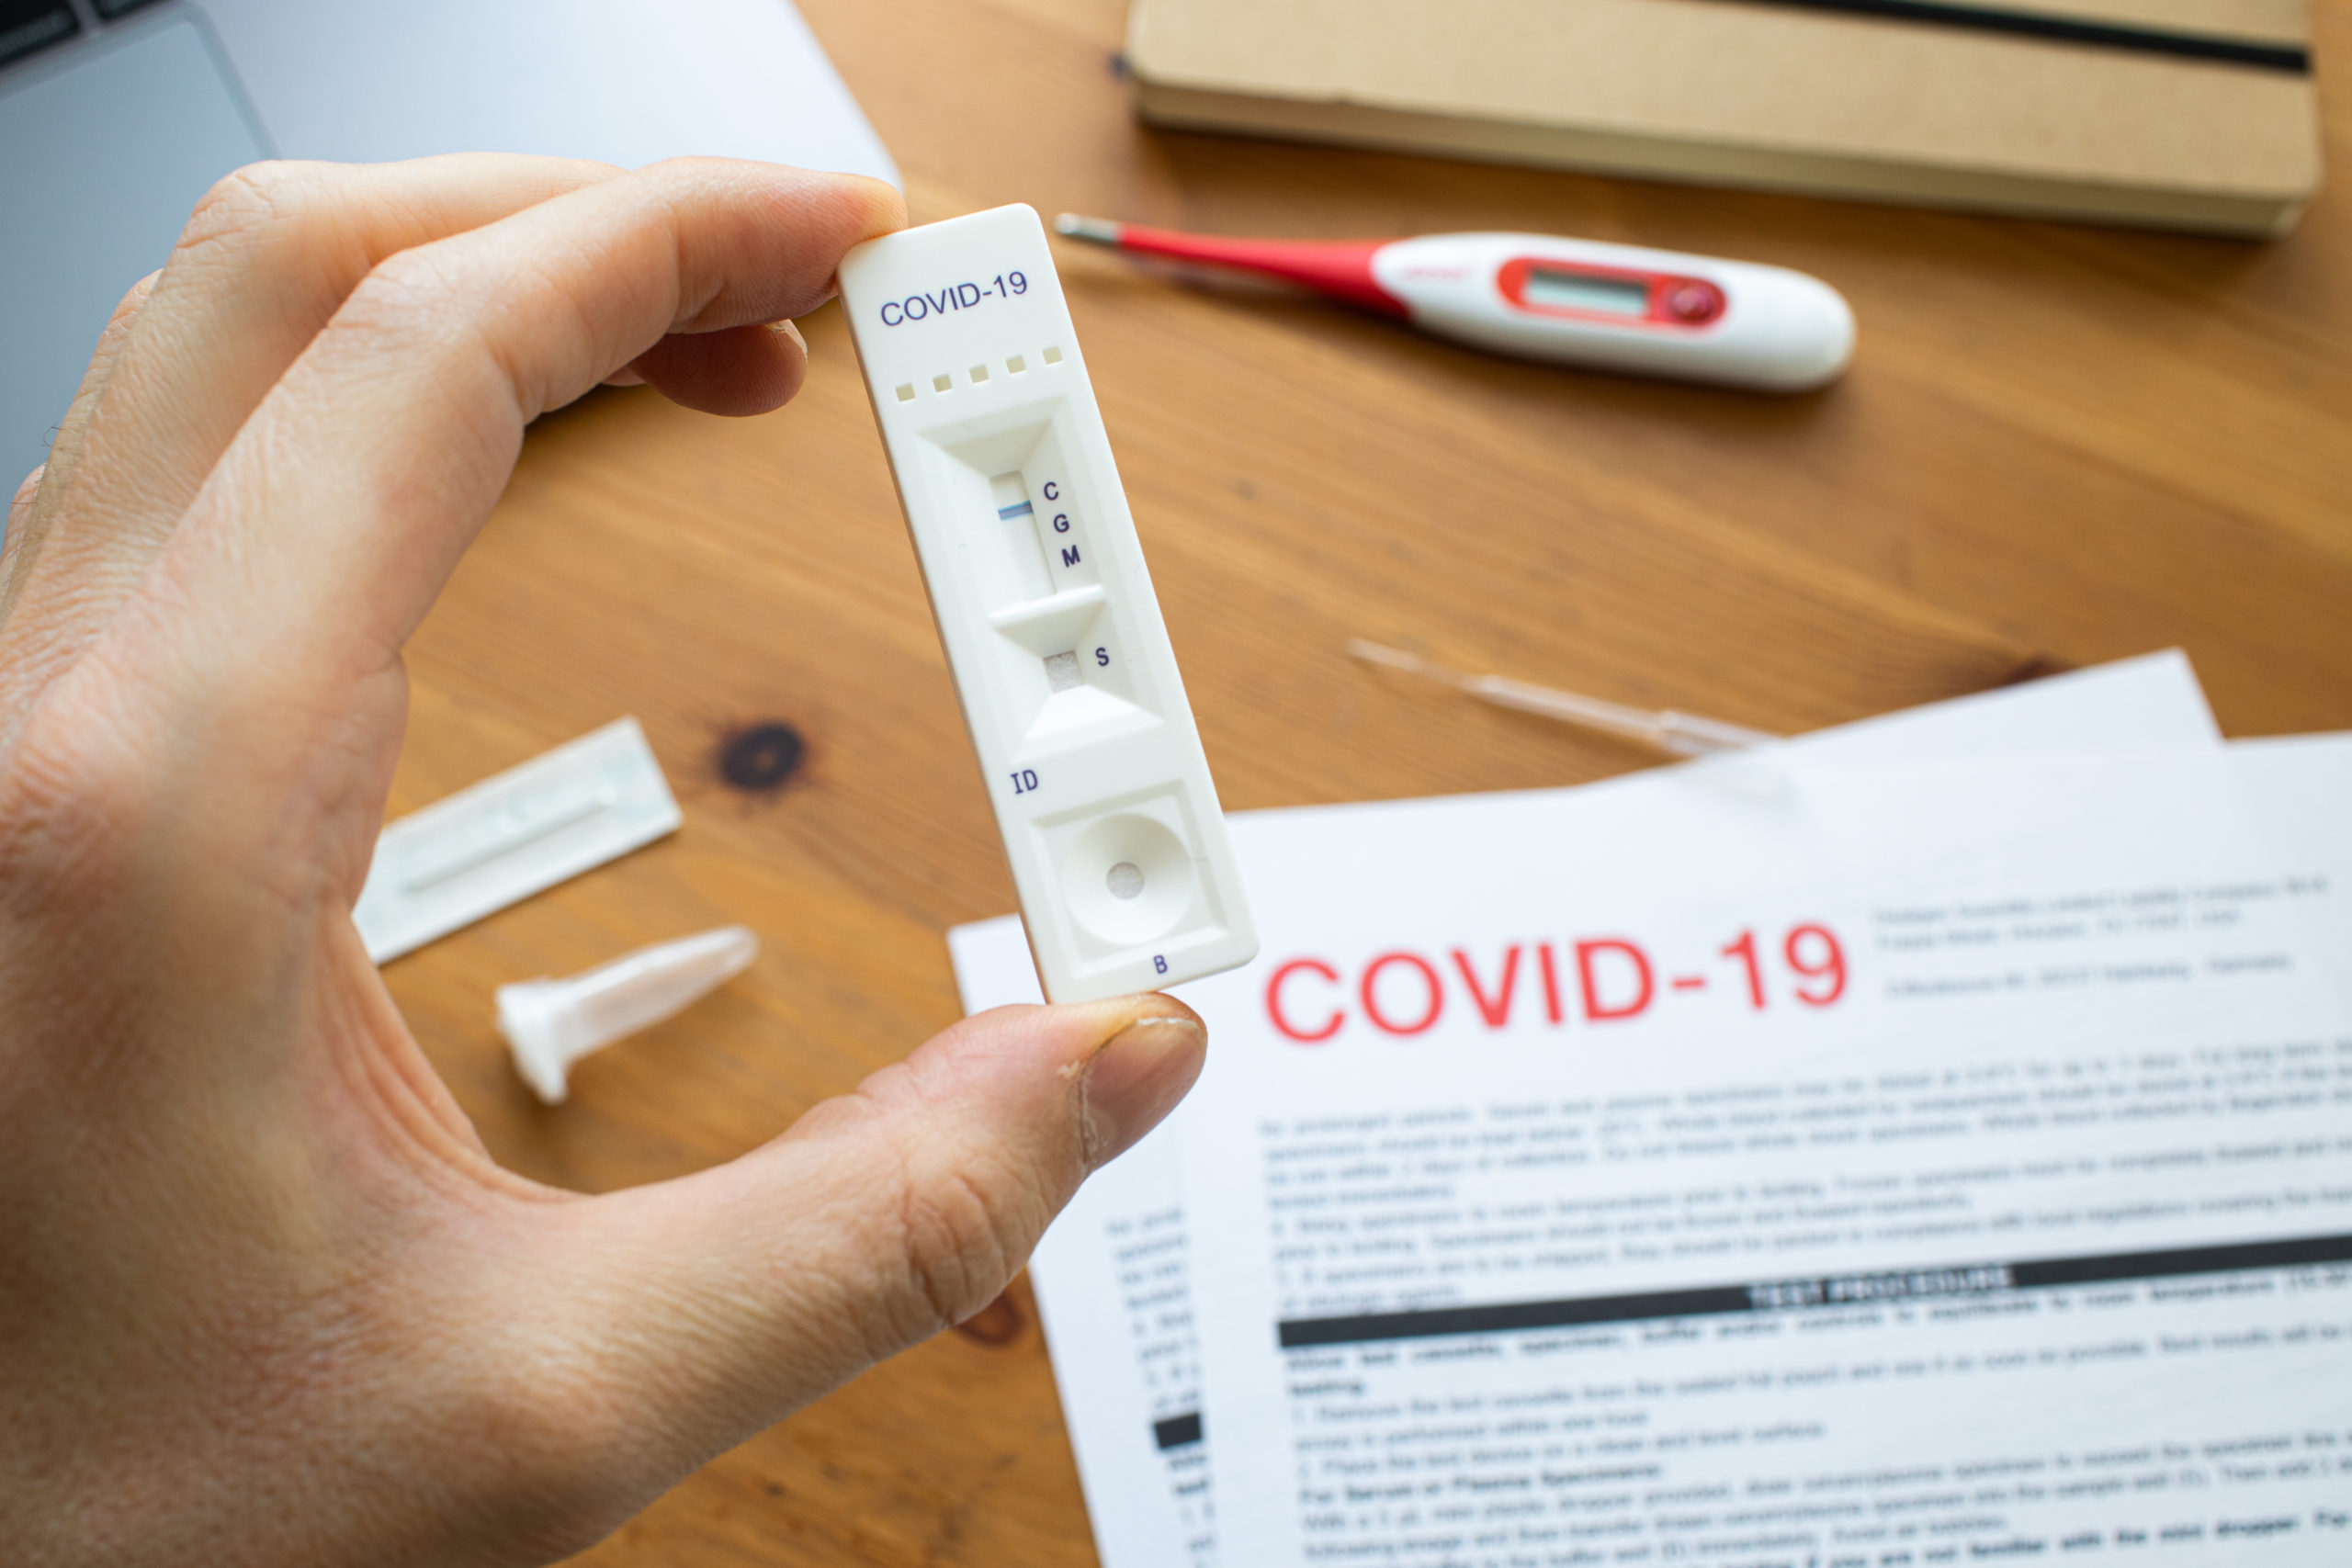 Συνταγογράφηση διαγνωστικών προϊόντων του COVID-19 ζητούν οι φαρμακοποιοί